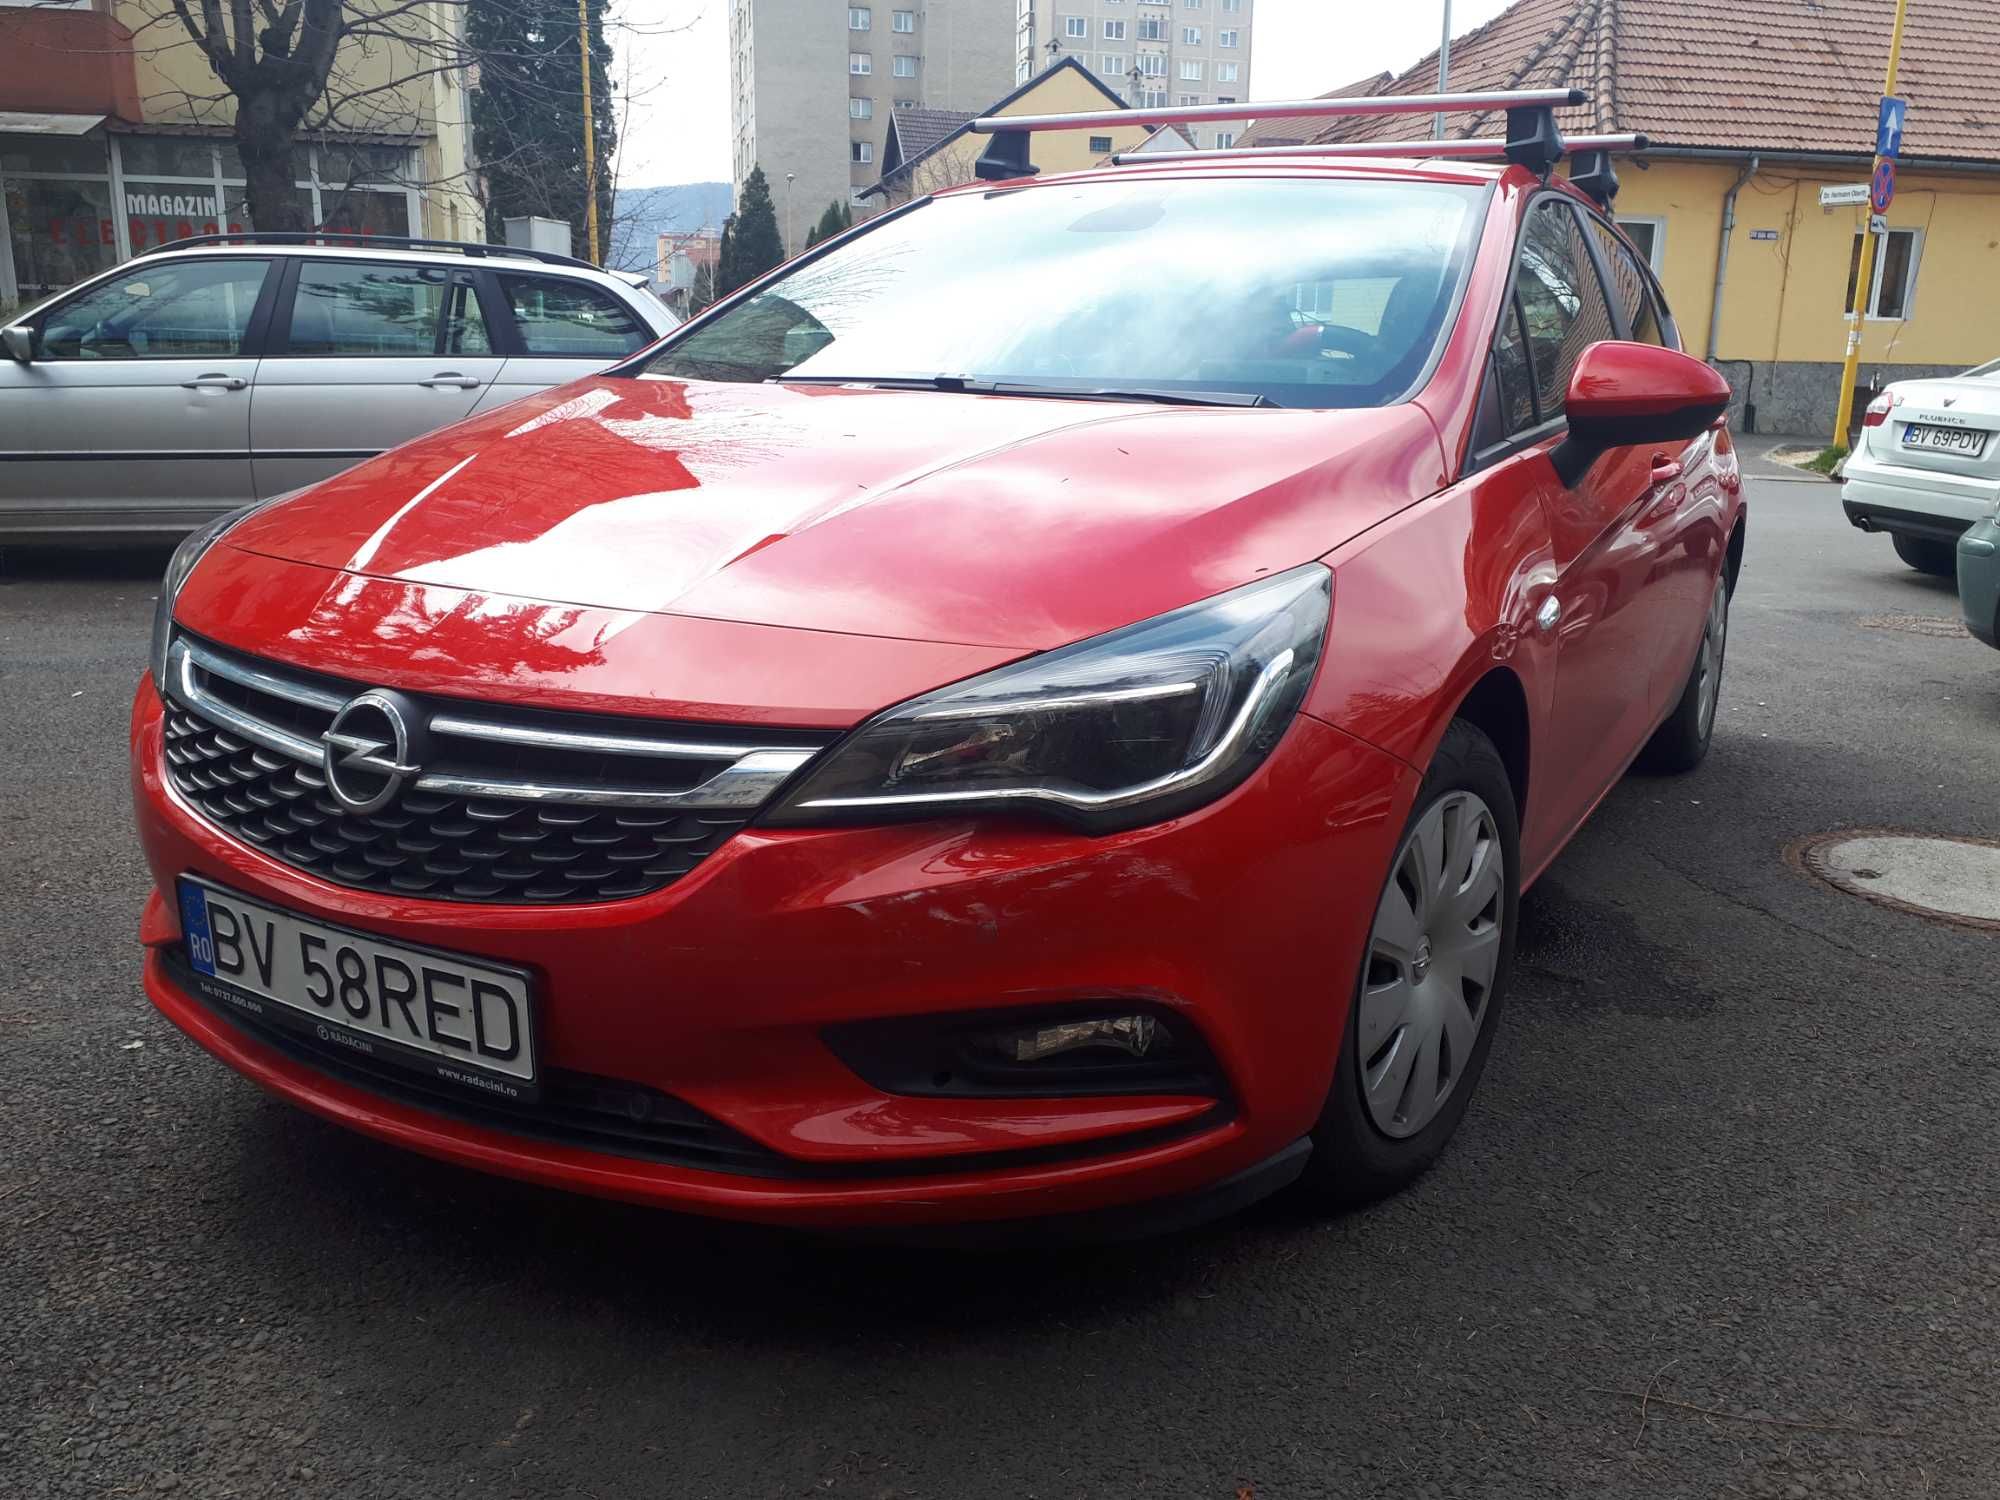 Opel Astra K, 1,4 Turbo, 2019, 125 CP în garanție până în august 2024